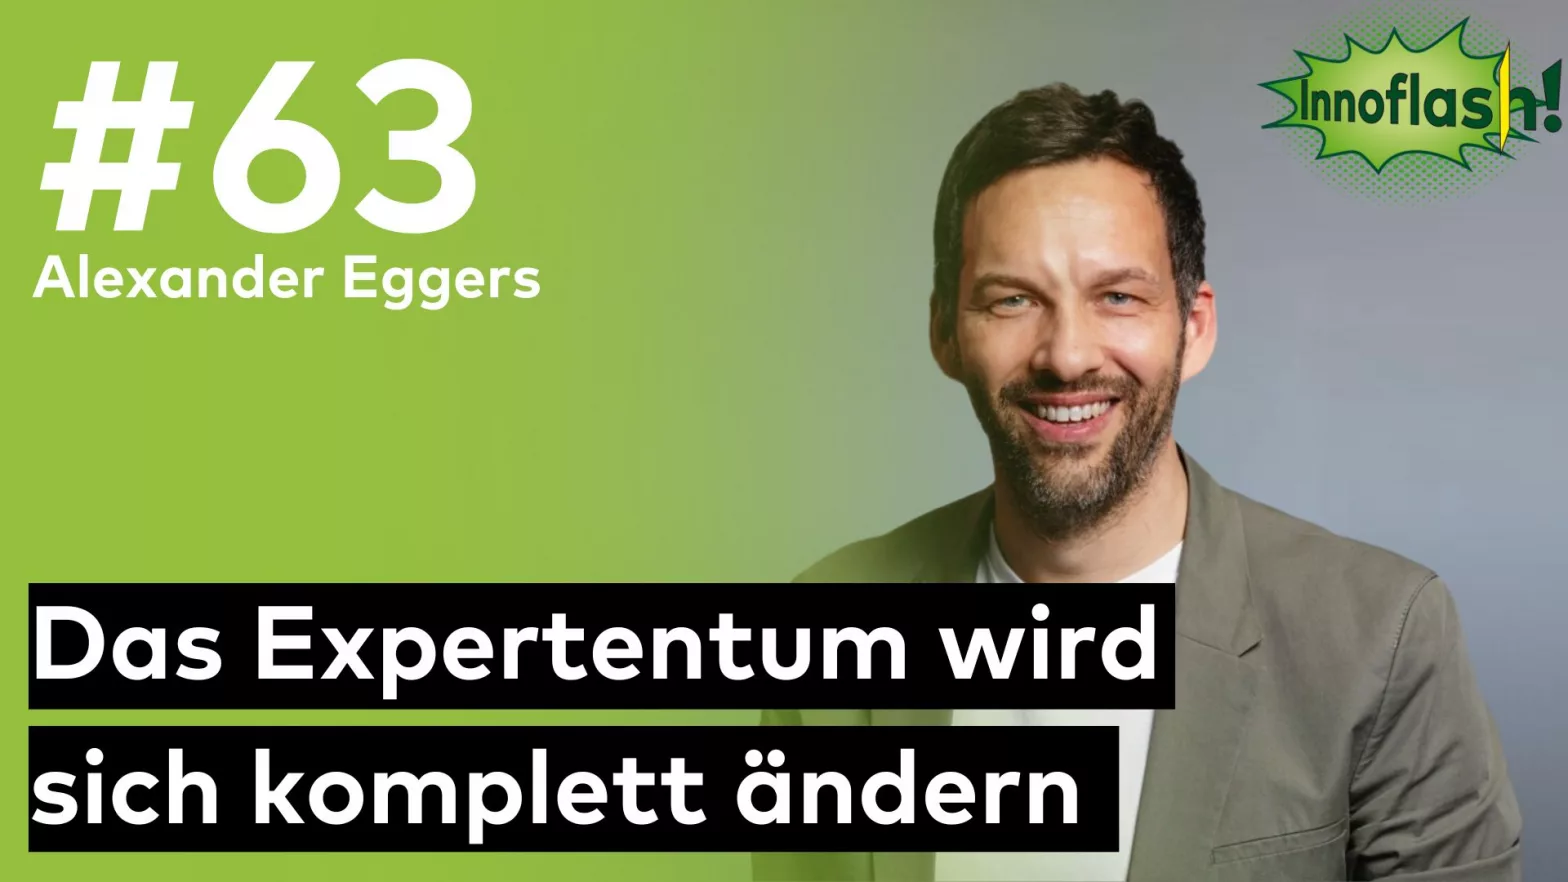 Thumbnail für die Innoflash Ausgabe #63 mit Alxander Eggers (MVP Microsoft) mit dem Zitat "Das Expertentum wird sich komplett ändern"